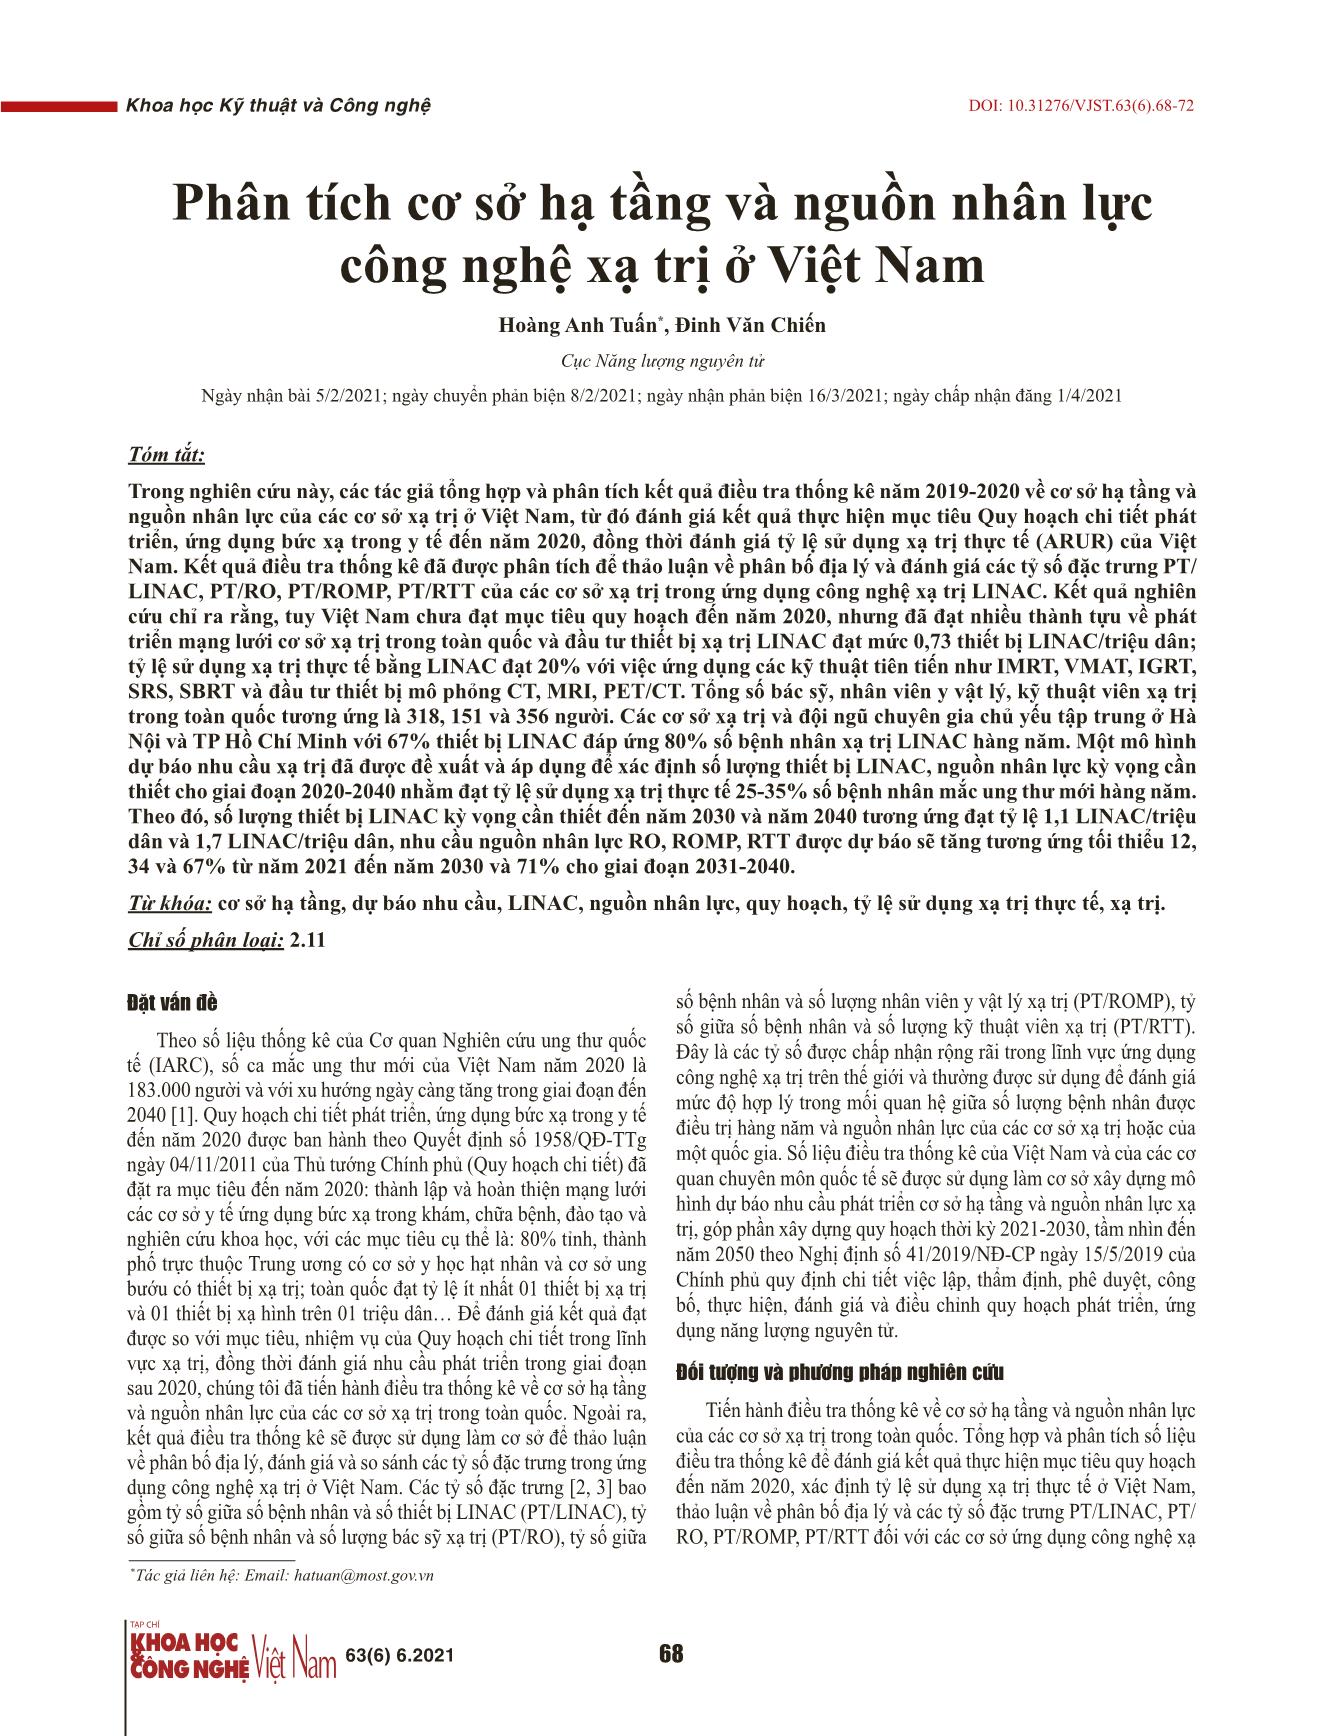 Phân tích cơ sở hạ tầng và nguồn nhân lực công nghệ xạ trị ở Việt Nam trang 1